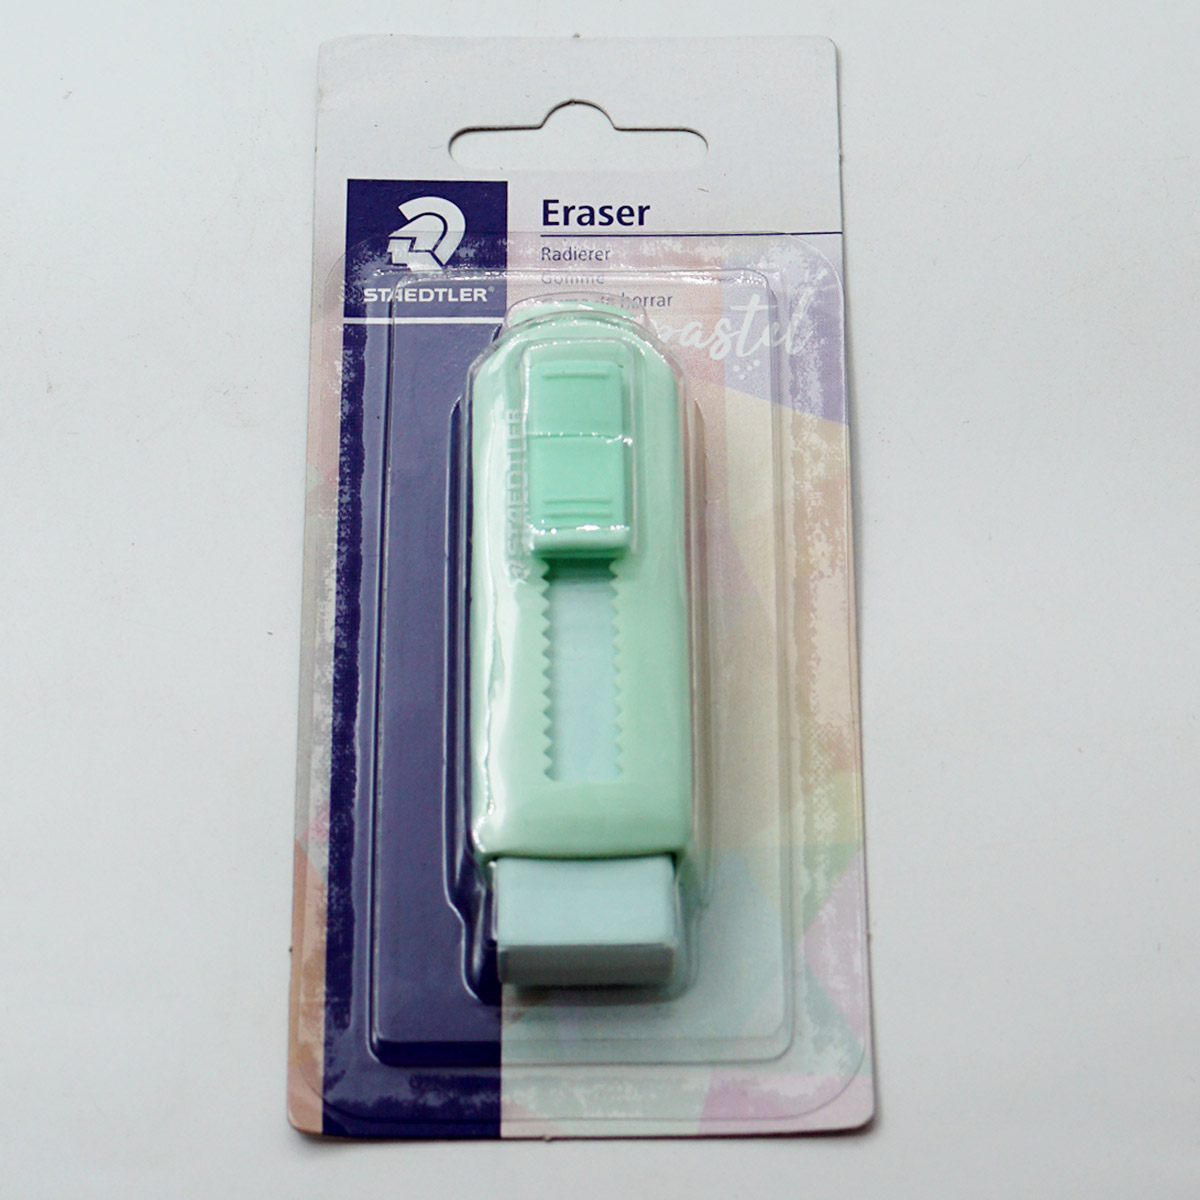 Staedtler 525 PSBKPA Light Green Color Sliding Plastic Eraser SKU 50169